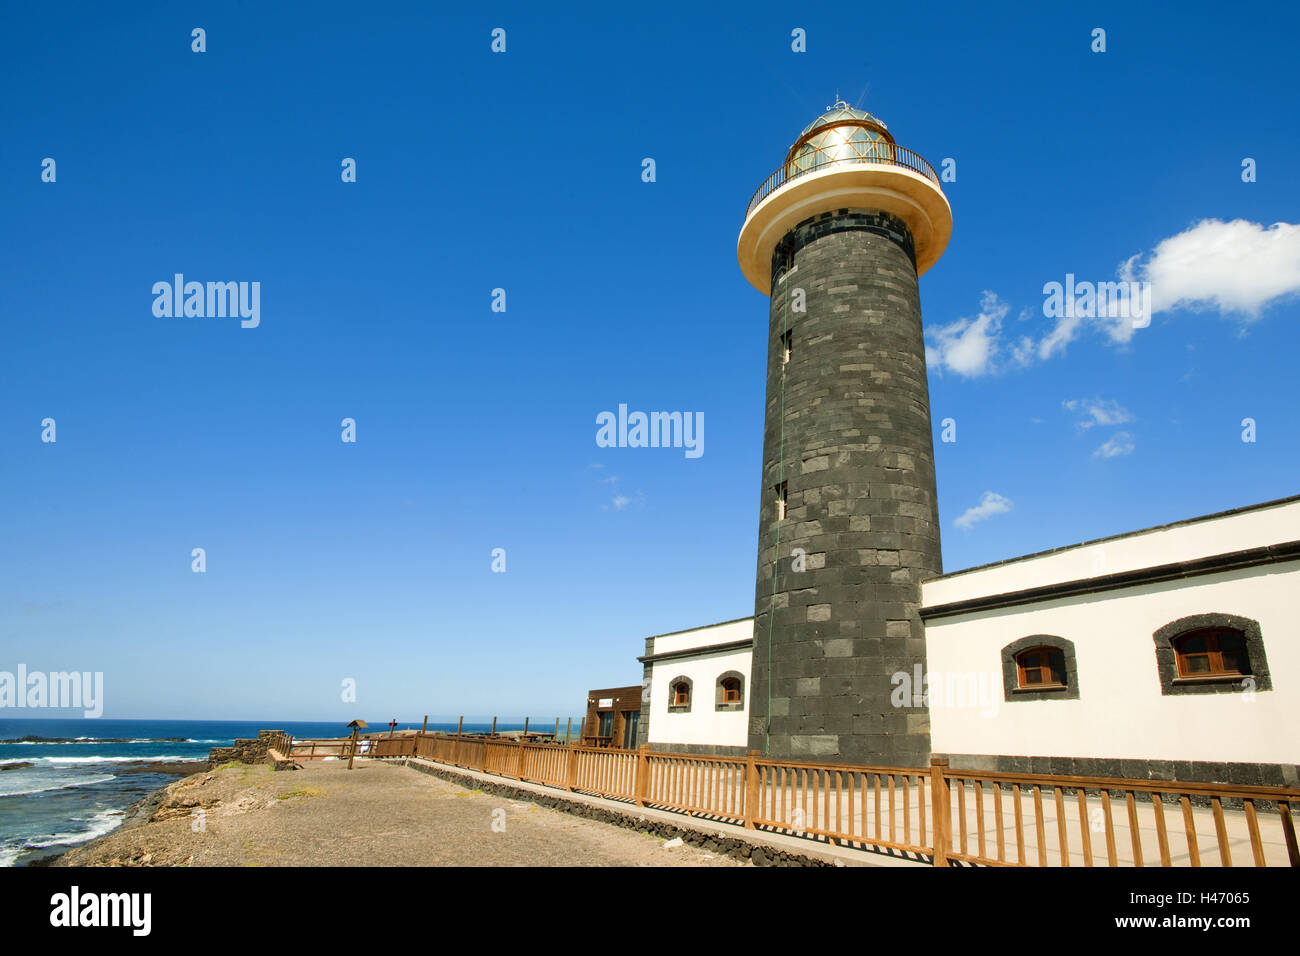 Faro de puerto de la cruz fotografías e imágenes de alta resolución - Alamy